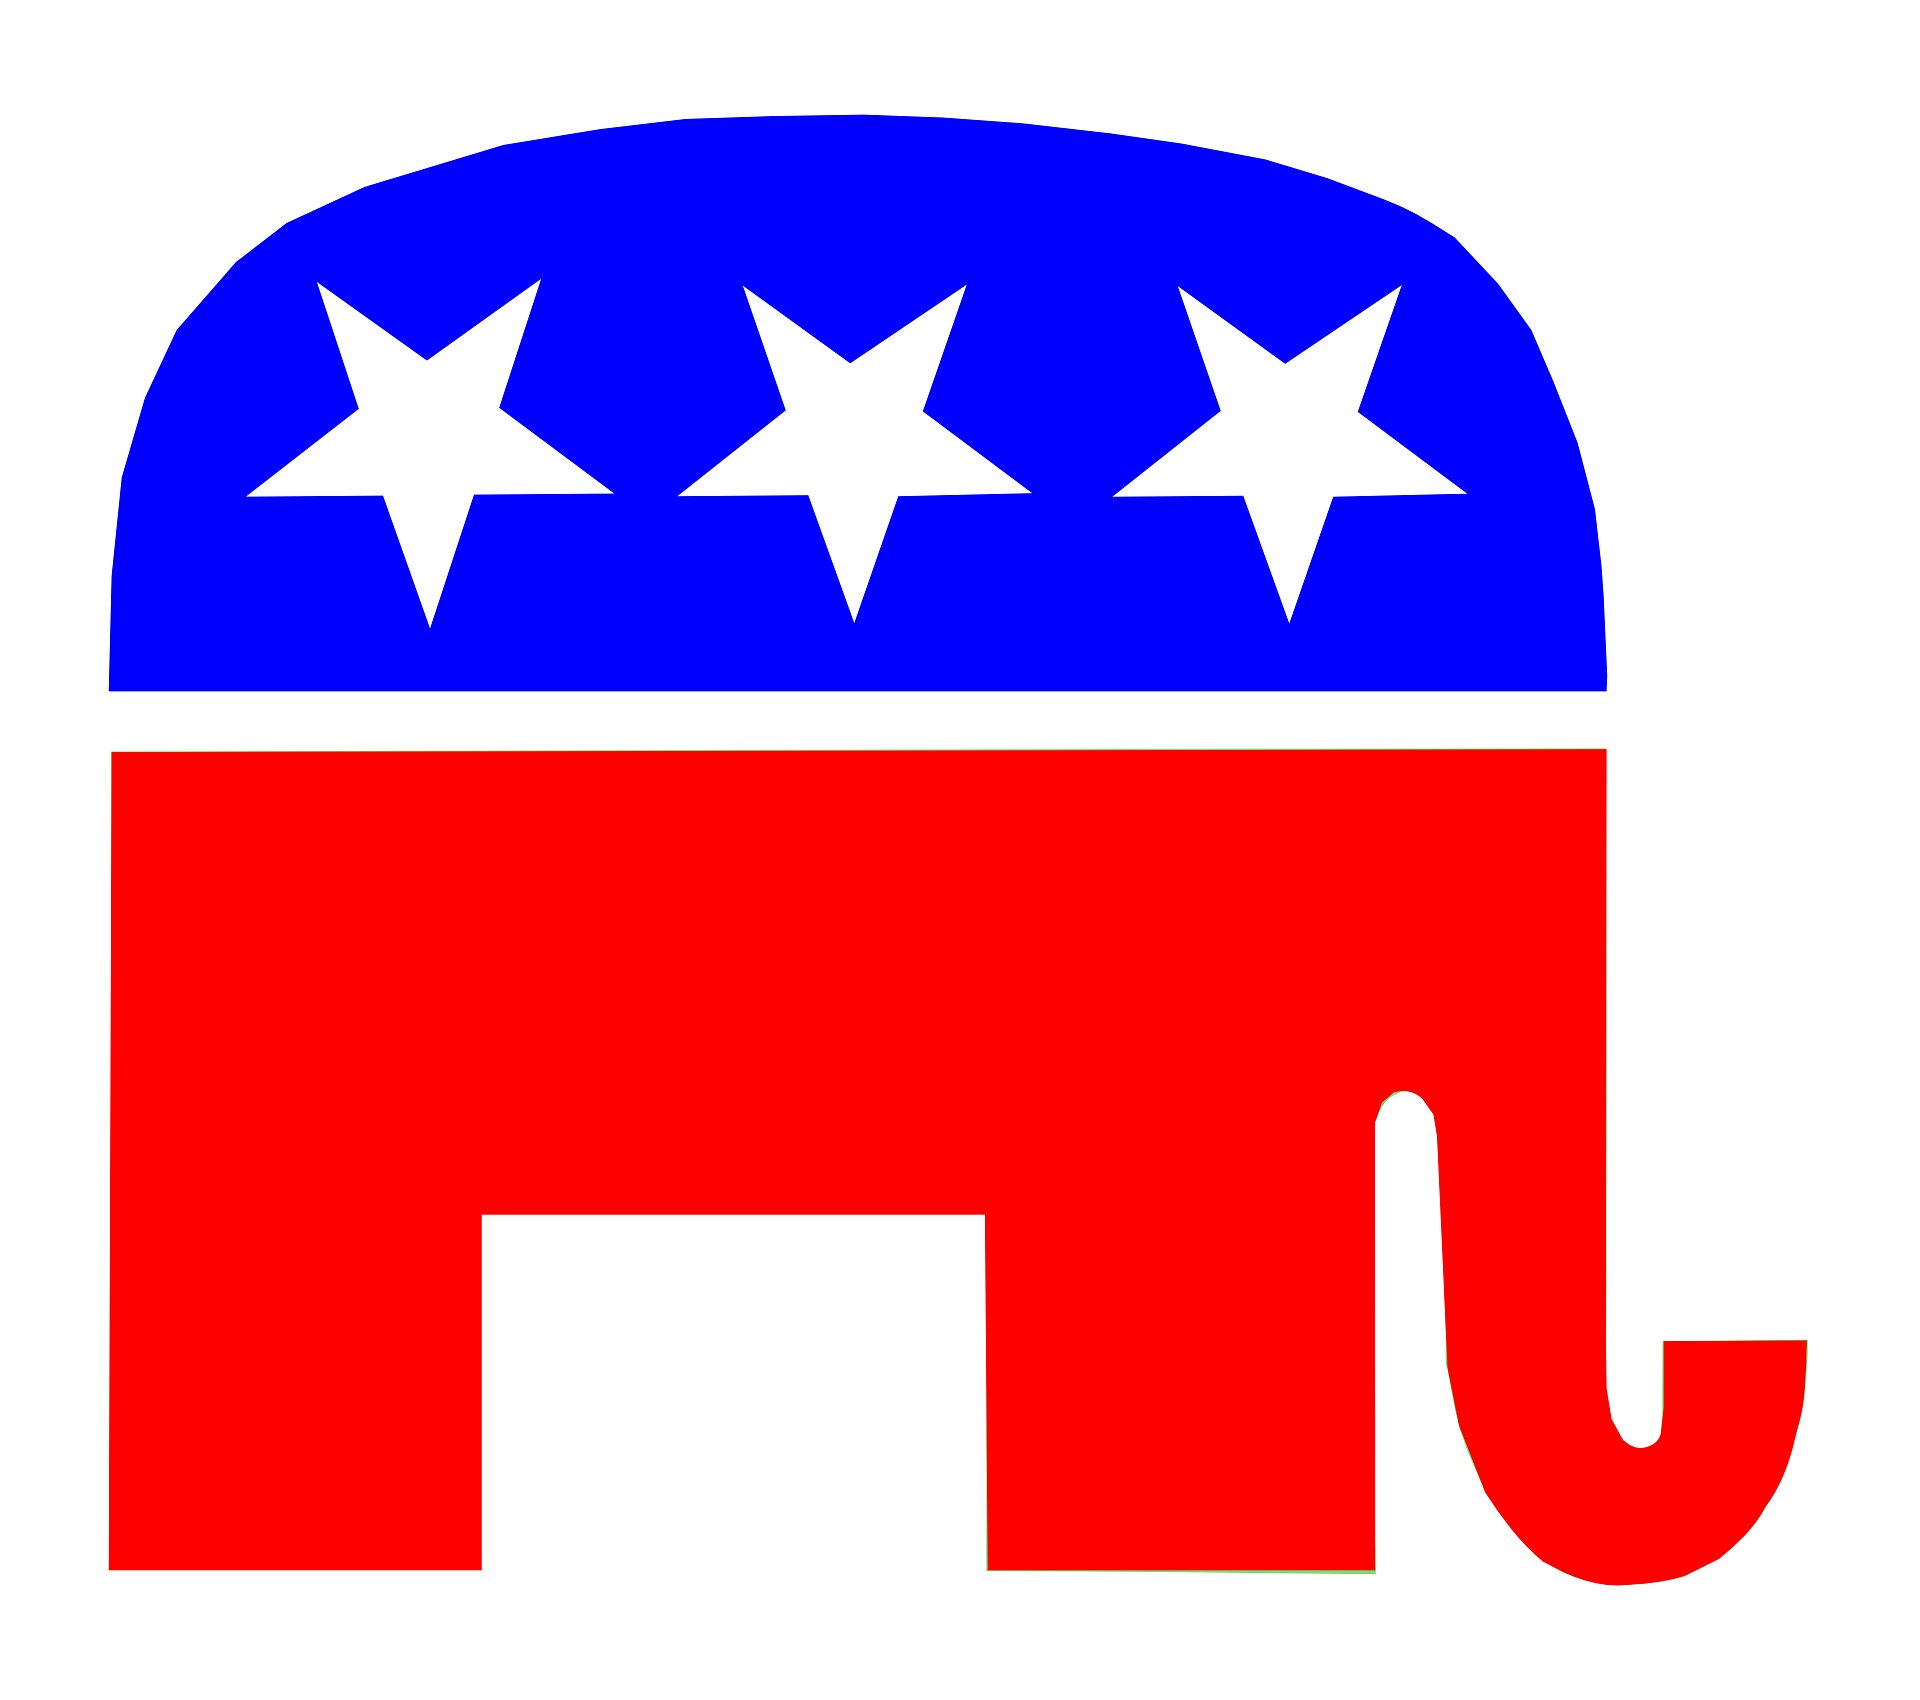 Республиканская партия идеология. Республиканская партия США слон. Слон символ республиканской партии. Республиканская партия политические партии США. Символ республиканской партии США И символ Демократической.